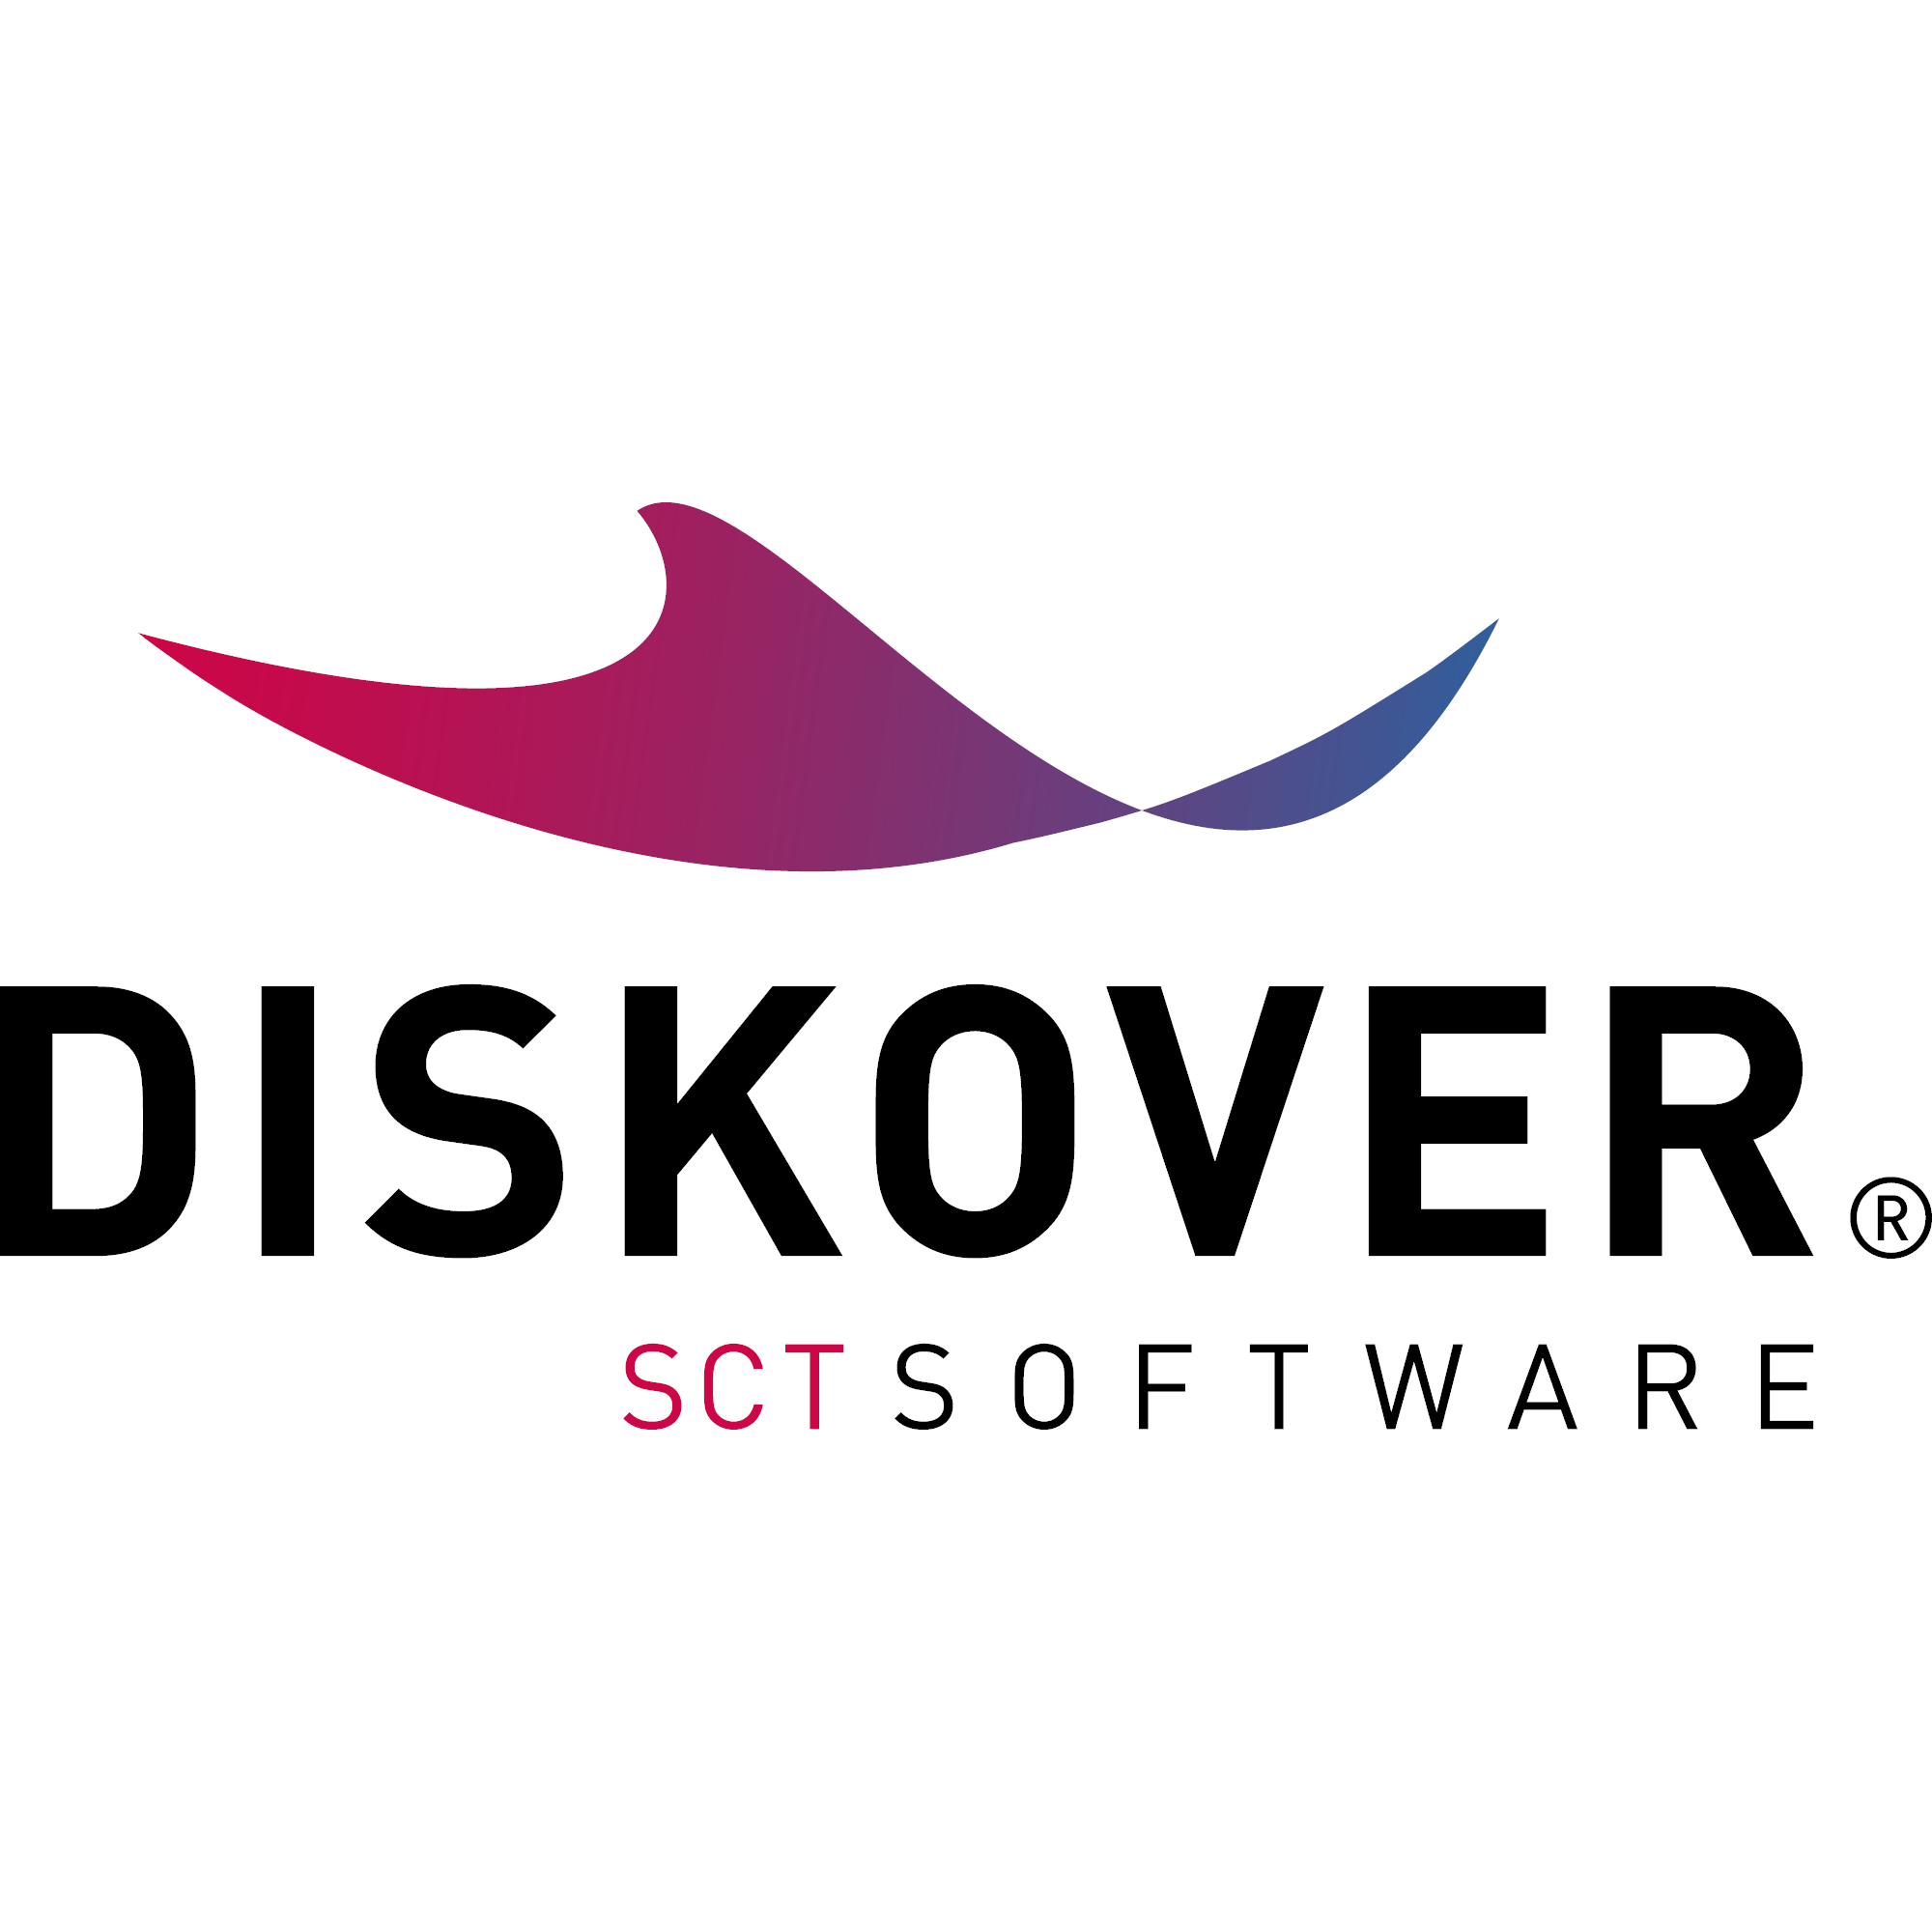 DISKOVER - eine SCT Software